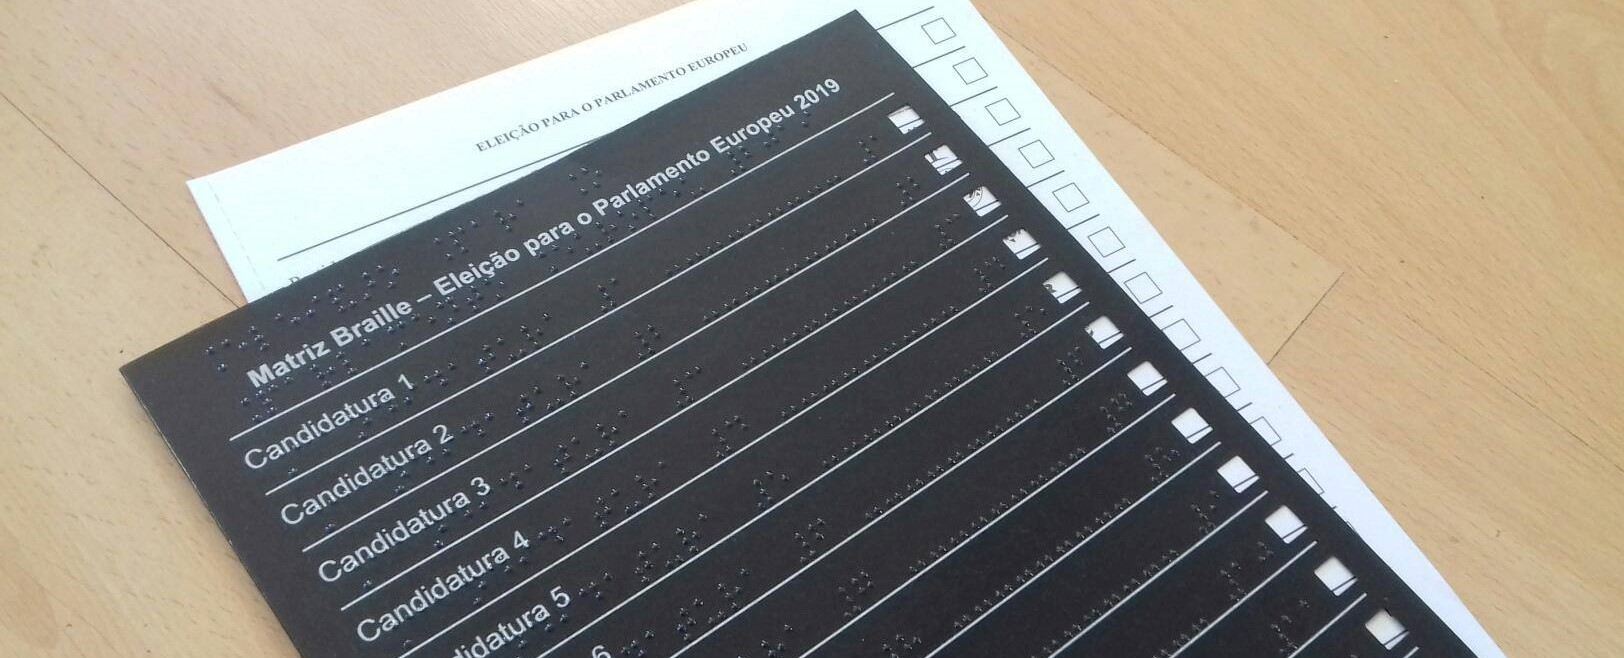 Matriz de voto em Braille